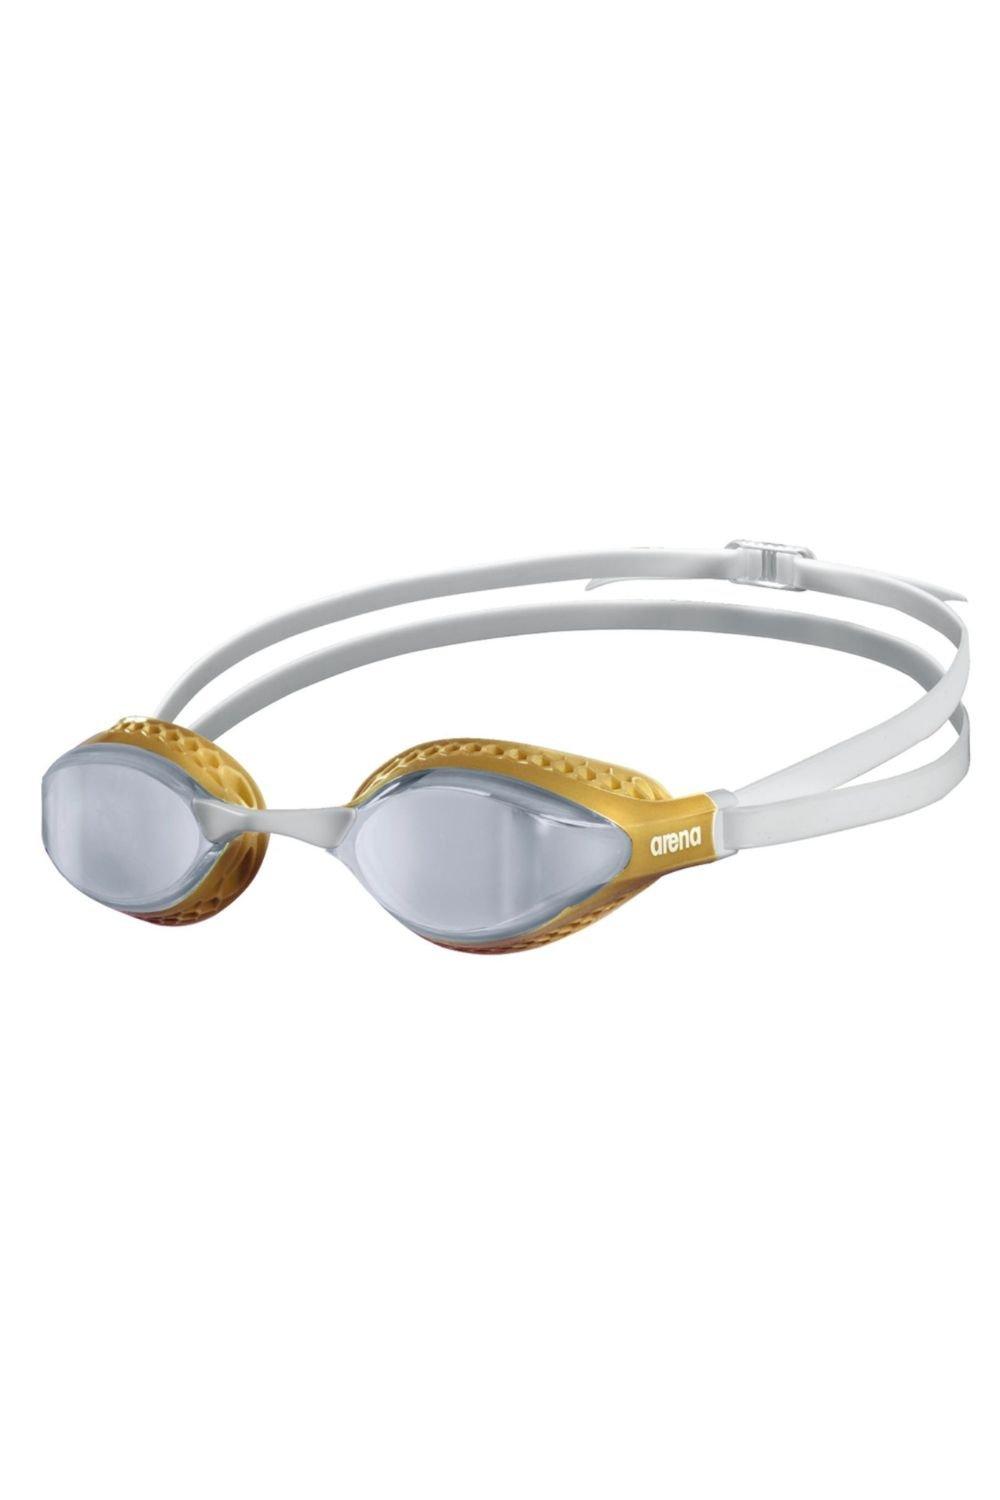 Очки для плавания с зеркалом Airspeed Arena, золото очки для плавания детские очки для плавания прямые продажи с завода водонепроницаемые противотуманные детские силиконовые очки очки